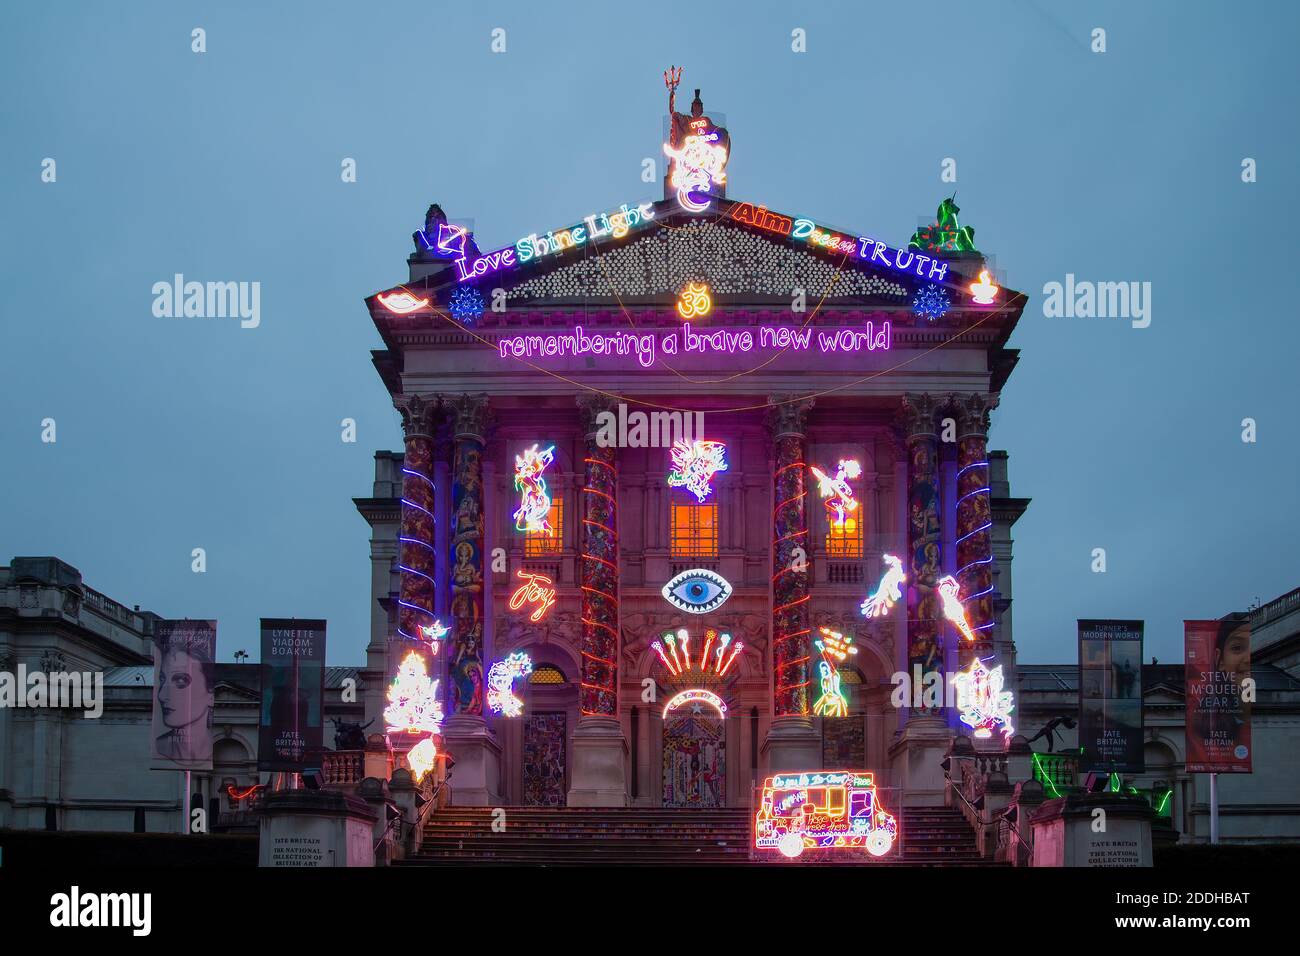 London, England - November 25 2020: Erinnerung an eine schöne neue Welt - eine farbenfrohe, beleuchtete Tate Britain kommission von Chila Kumari Singh Burman Stockfoto